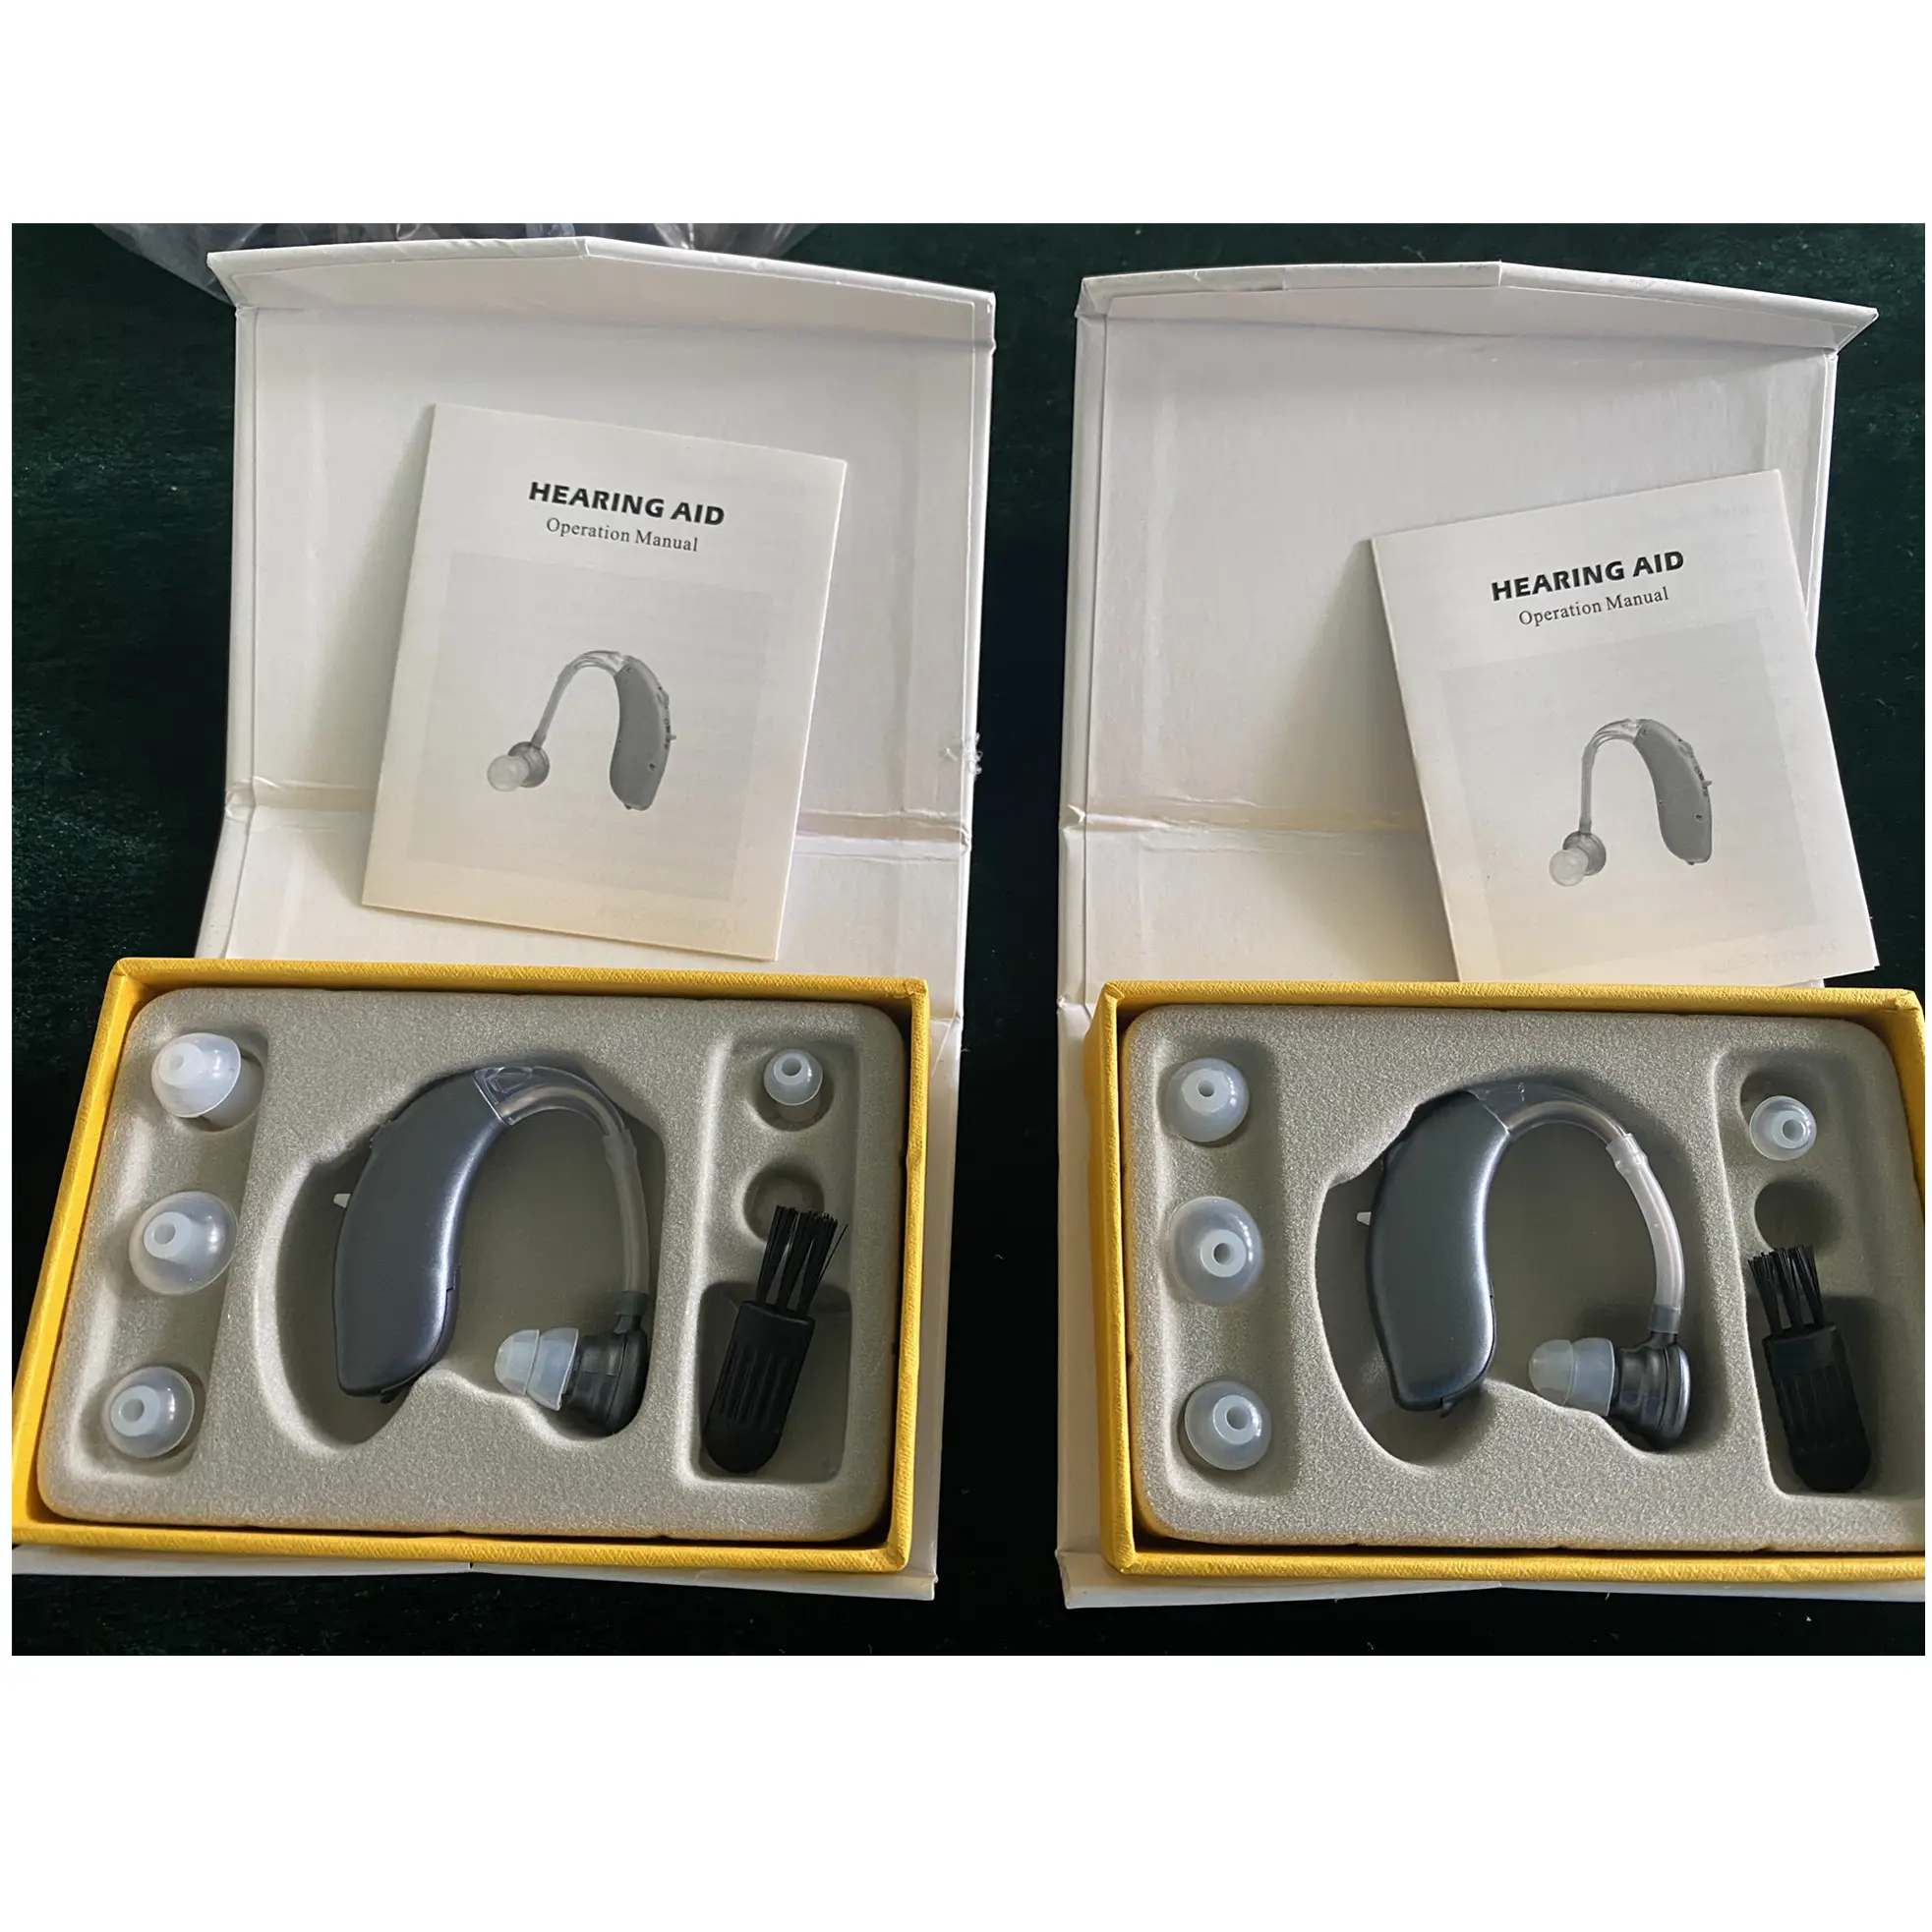 G20B BTE apparecchio acustico regolabile amplificatore audio para sordera amplificatore acustico a basso costo migliore per la vendita